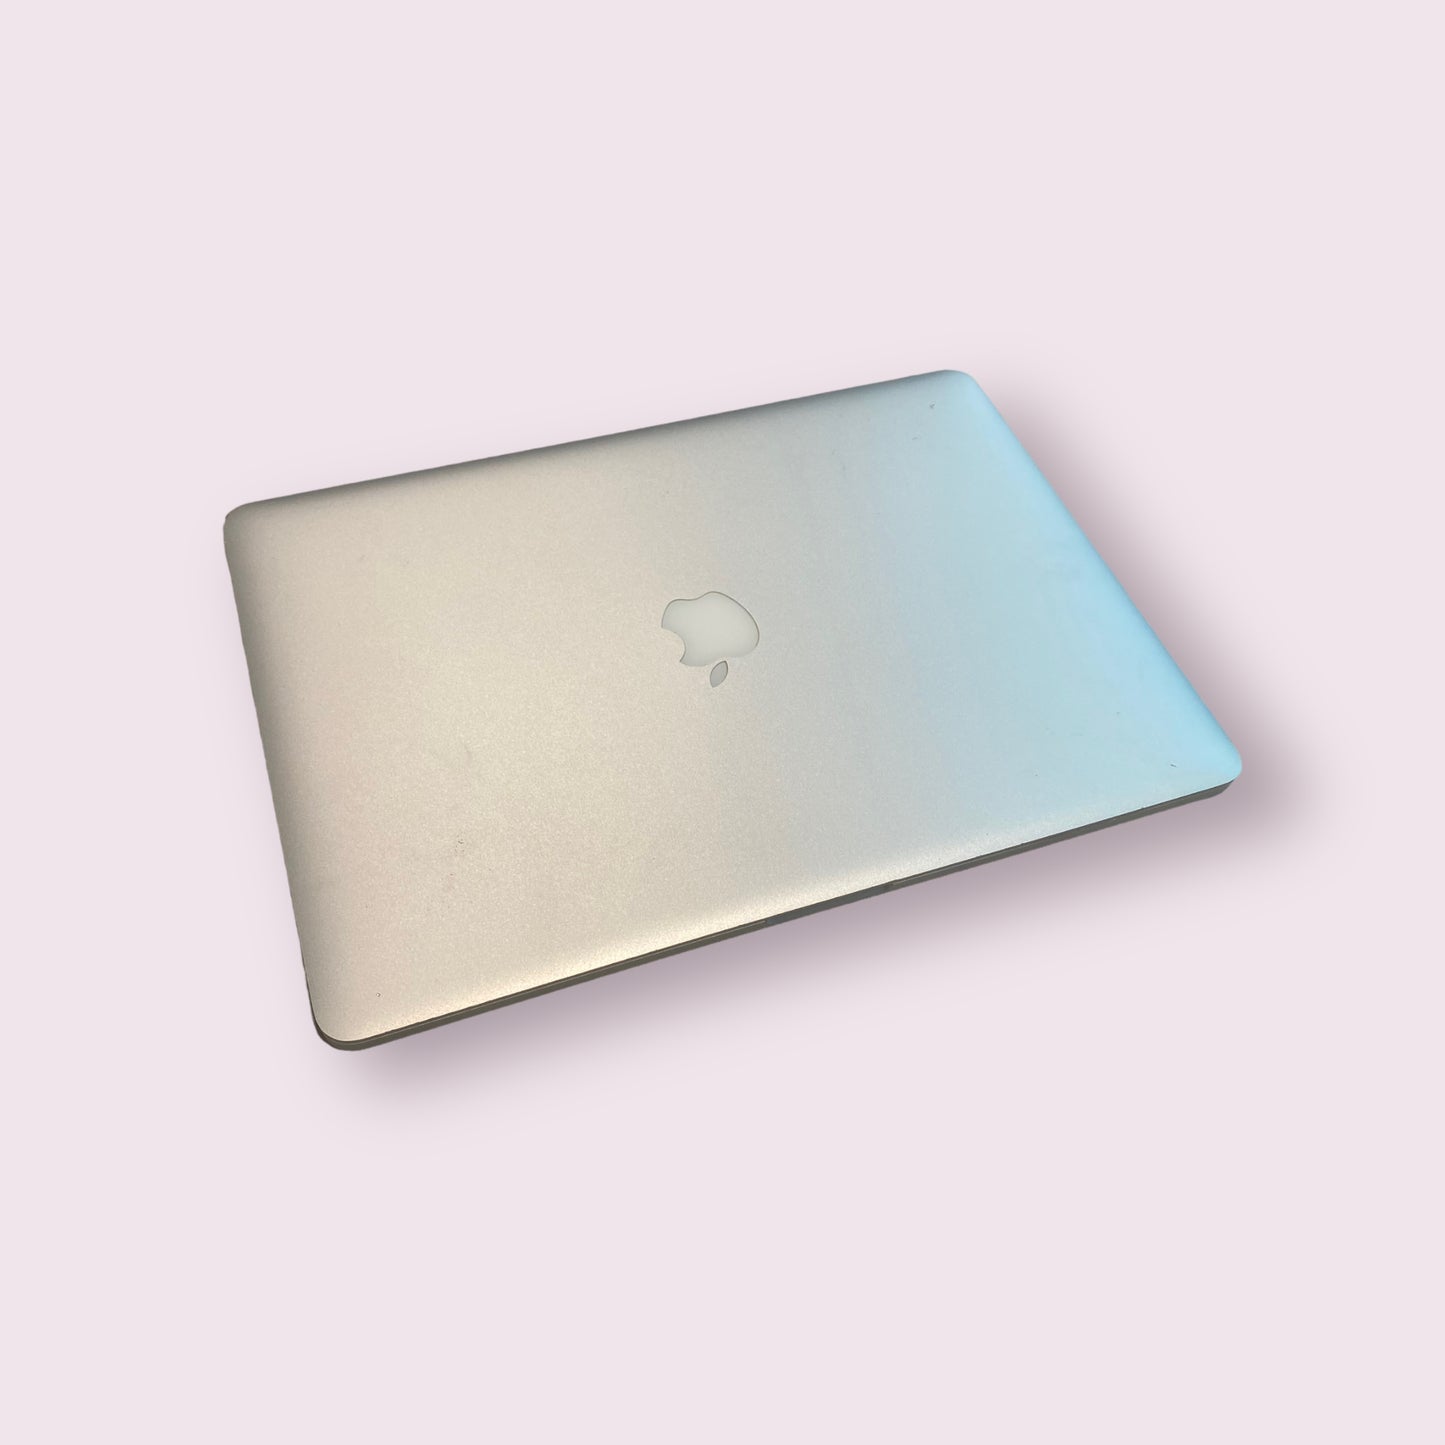 Apple Macbook Pro 15" Retina A1398 Mid 2012 - 16GB RAM, i7 @ 2.3GHz, 256GB SSD, Mac OS Catalina